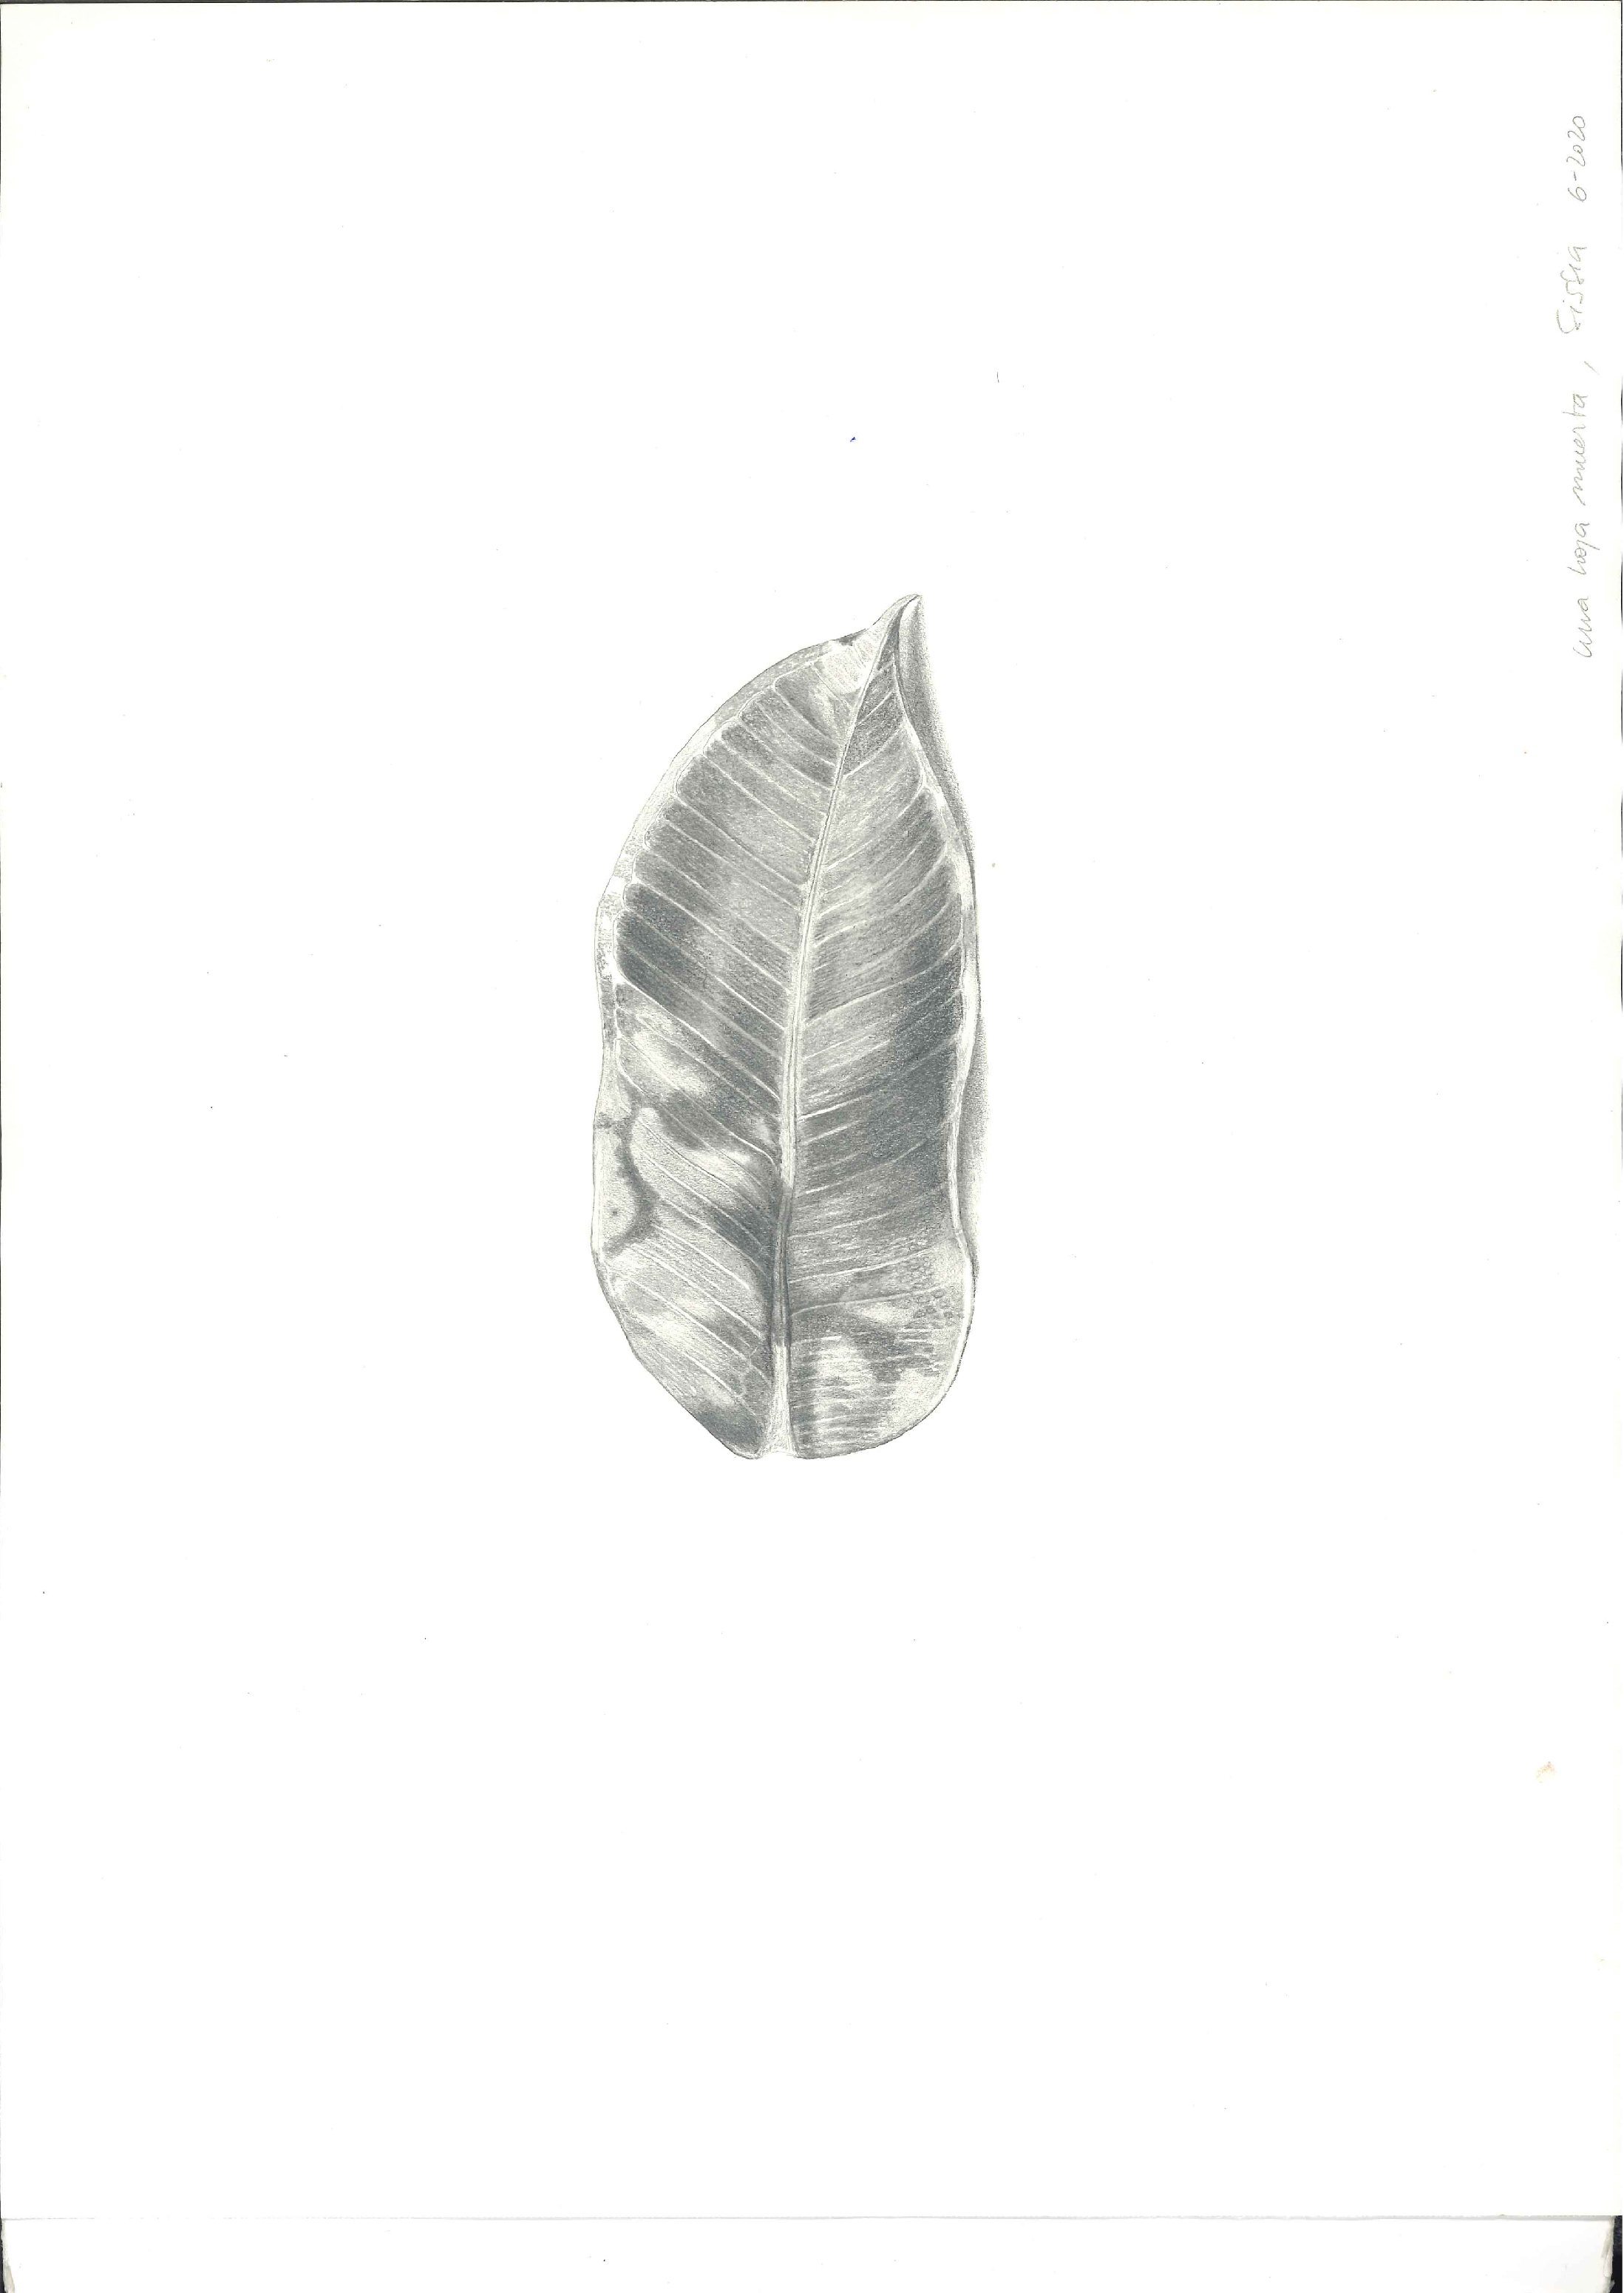 Imagen de un dibujo a lápiz de una hoja de una planta en un fondo blanco